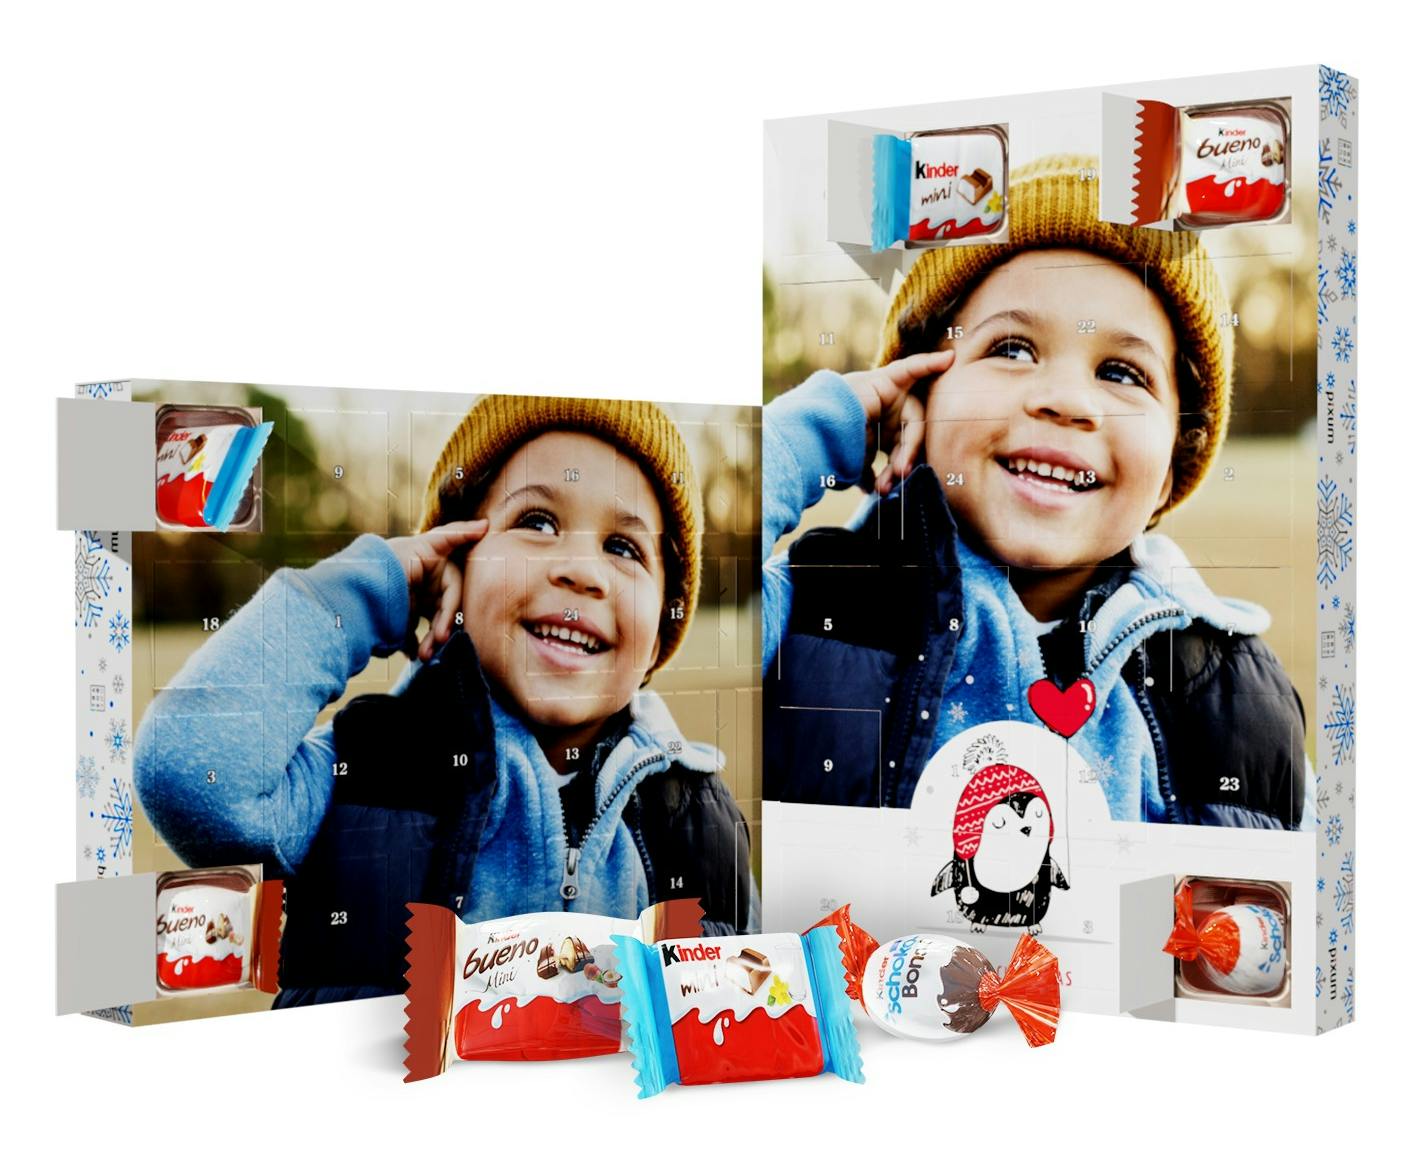 Julekalender med kinder® chokolade, cover med foto af en lille dreng